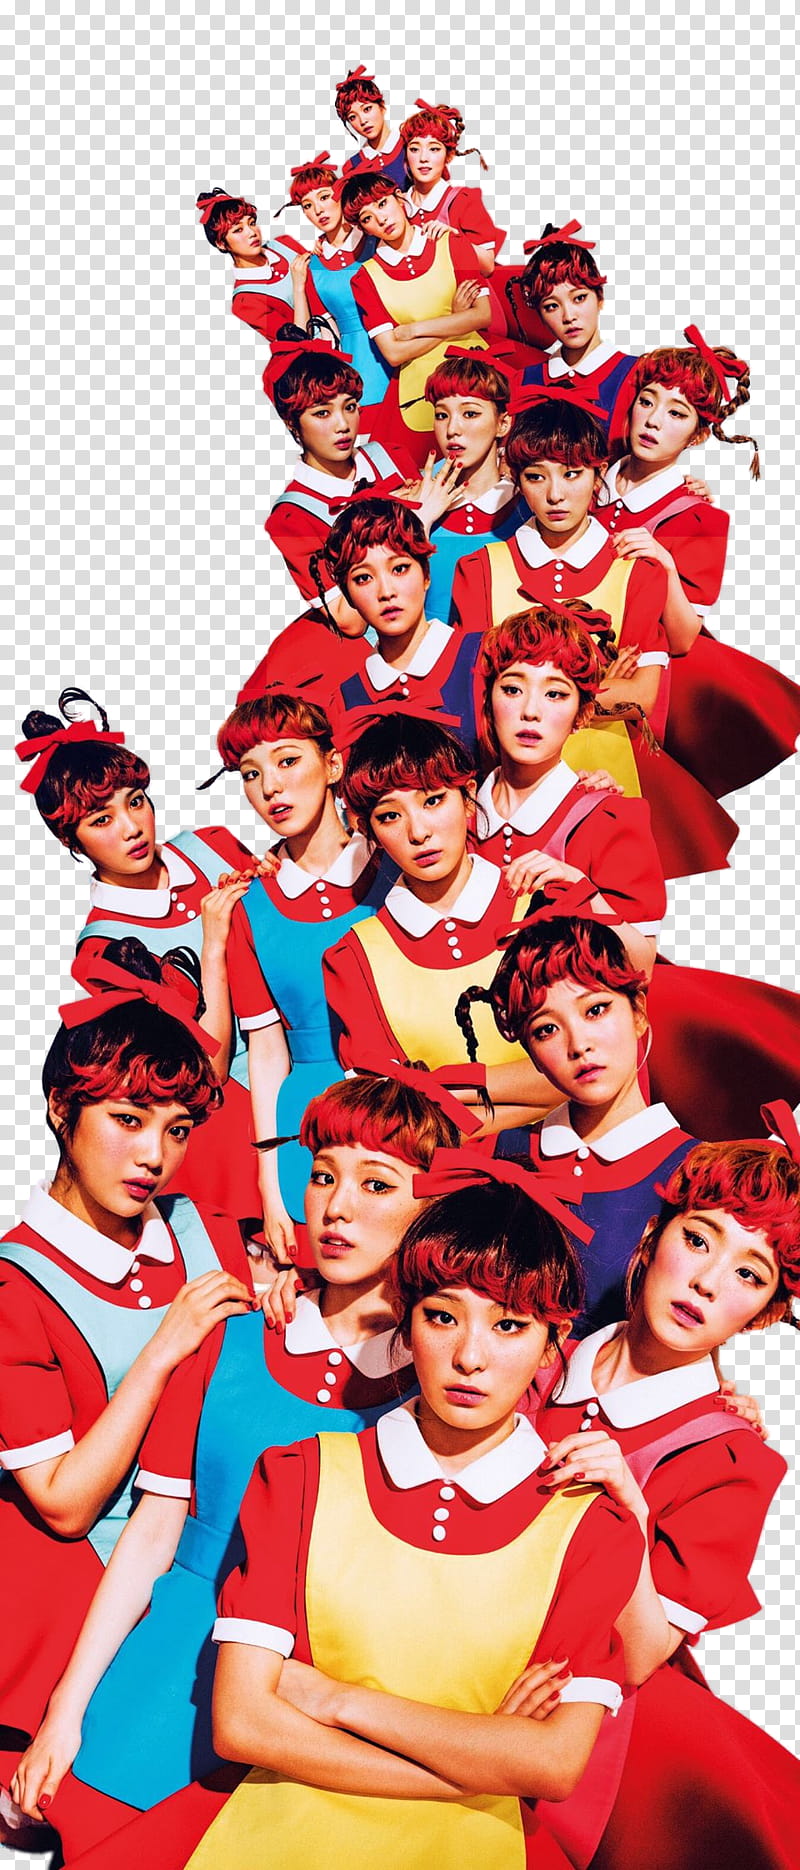 Red Velvet THE RED teaser, Red Velvet members illustration transparent background PNG clipart